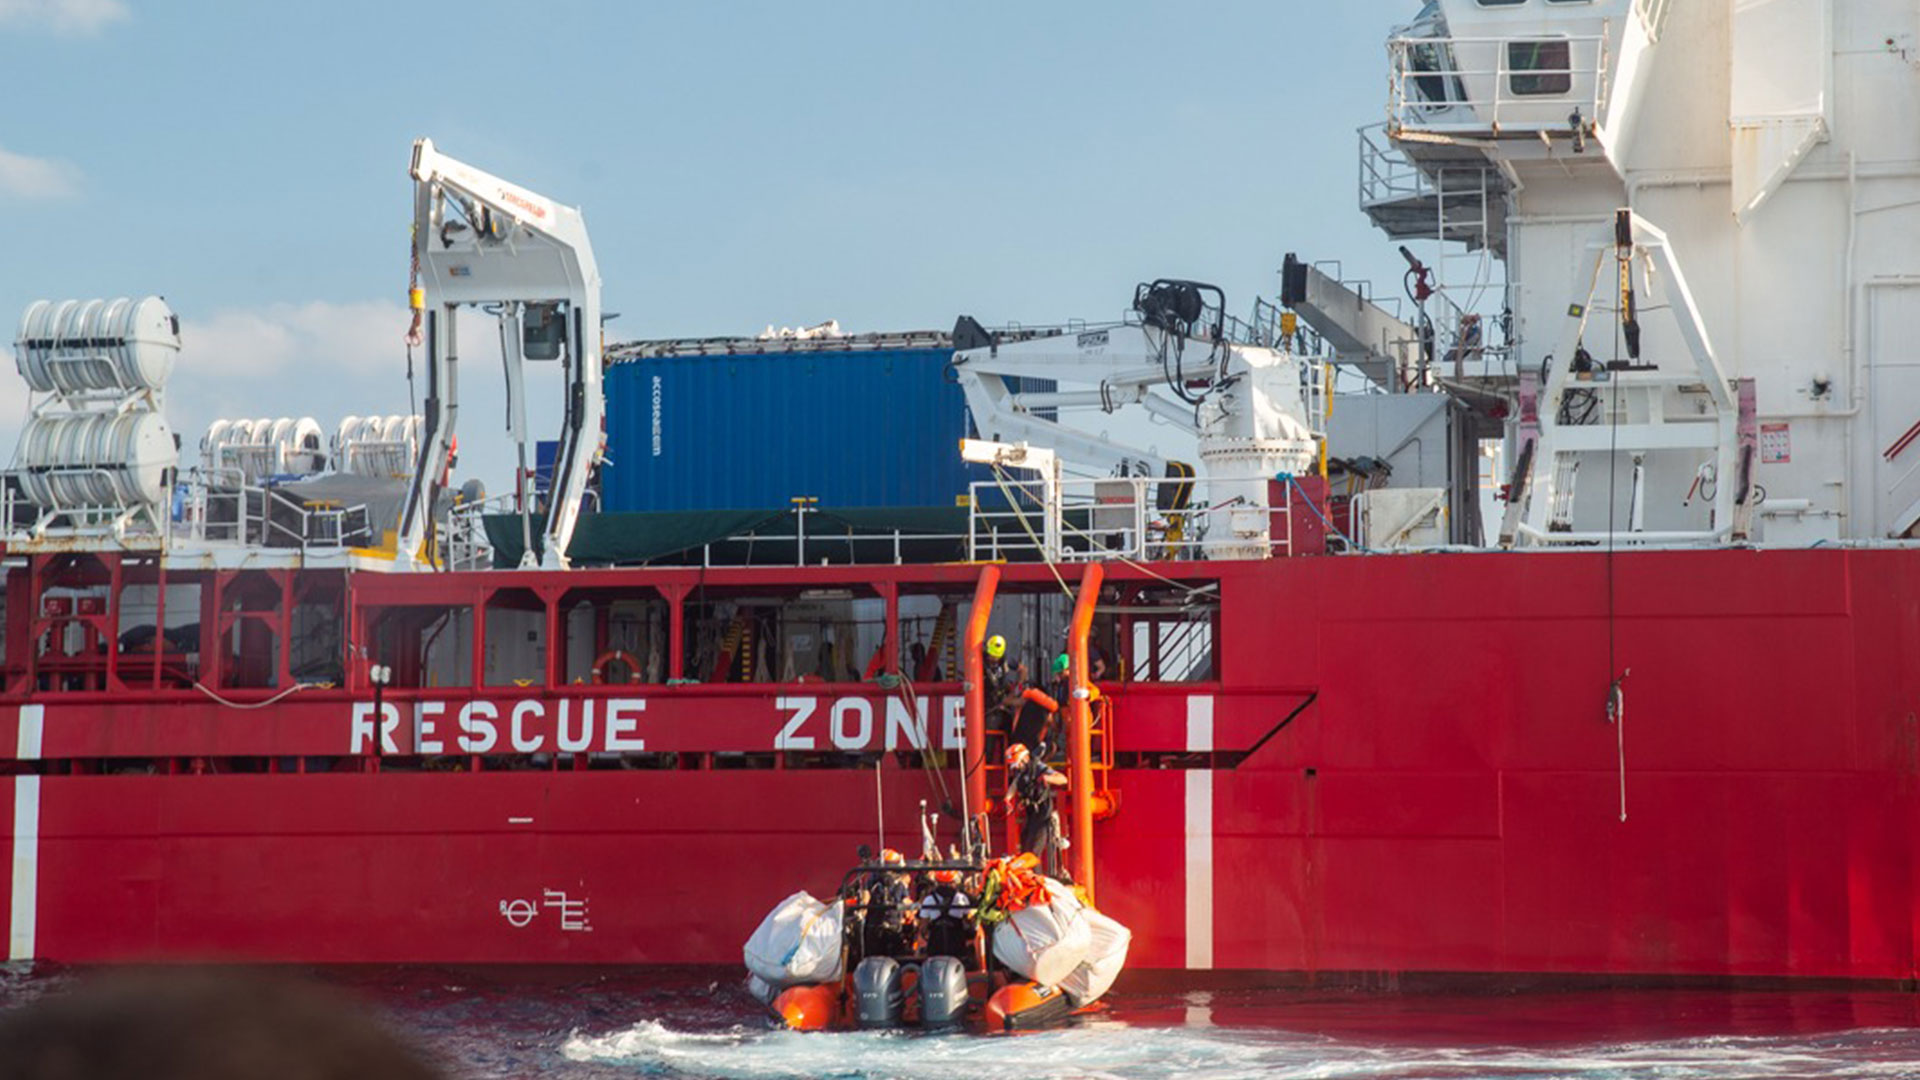 سفينة "أوشن فايكينغ" تنقذ  68 مهاجراً قبالة السواحل الليبية